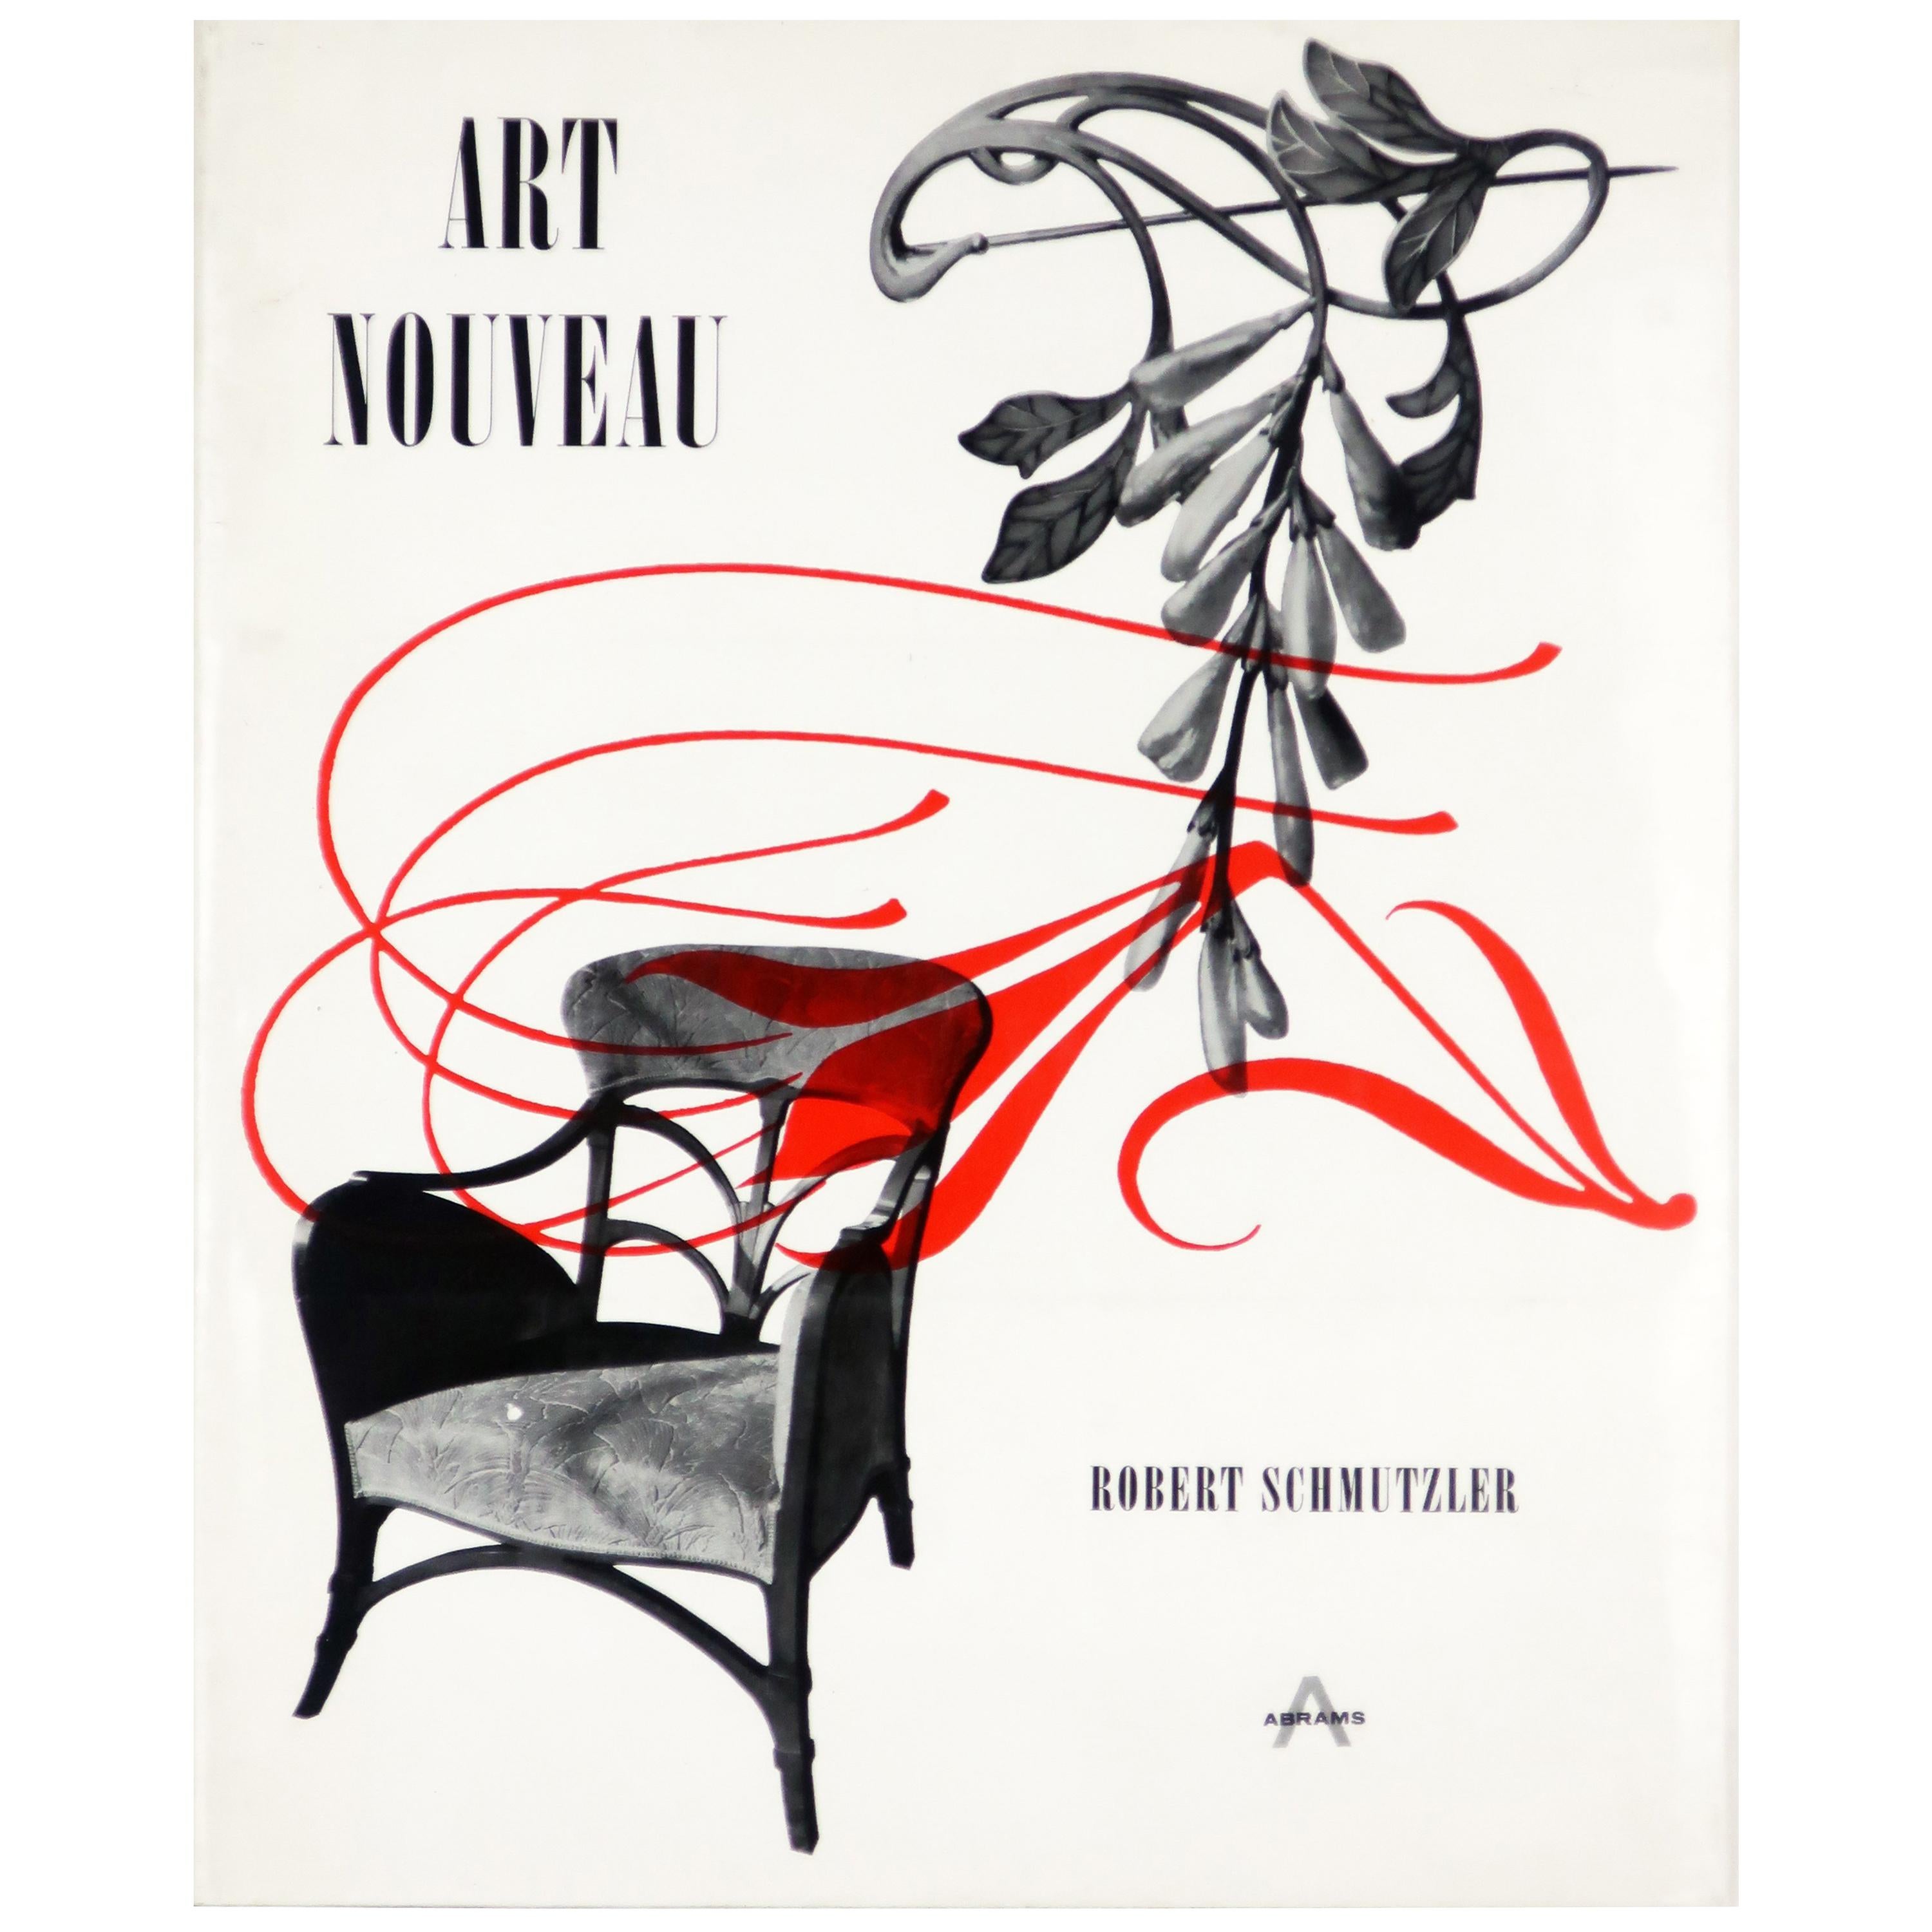 “Art Nouveau” by Robert Schmutzler Book